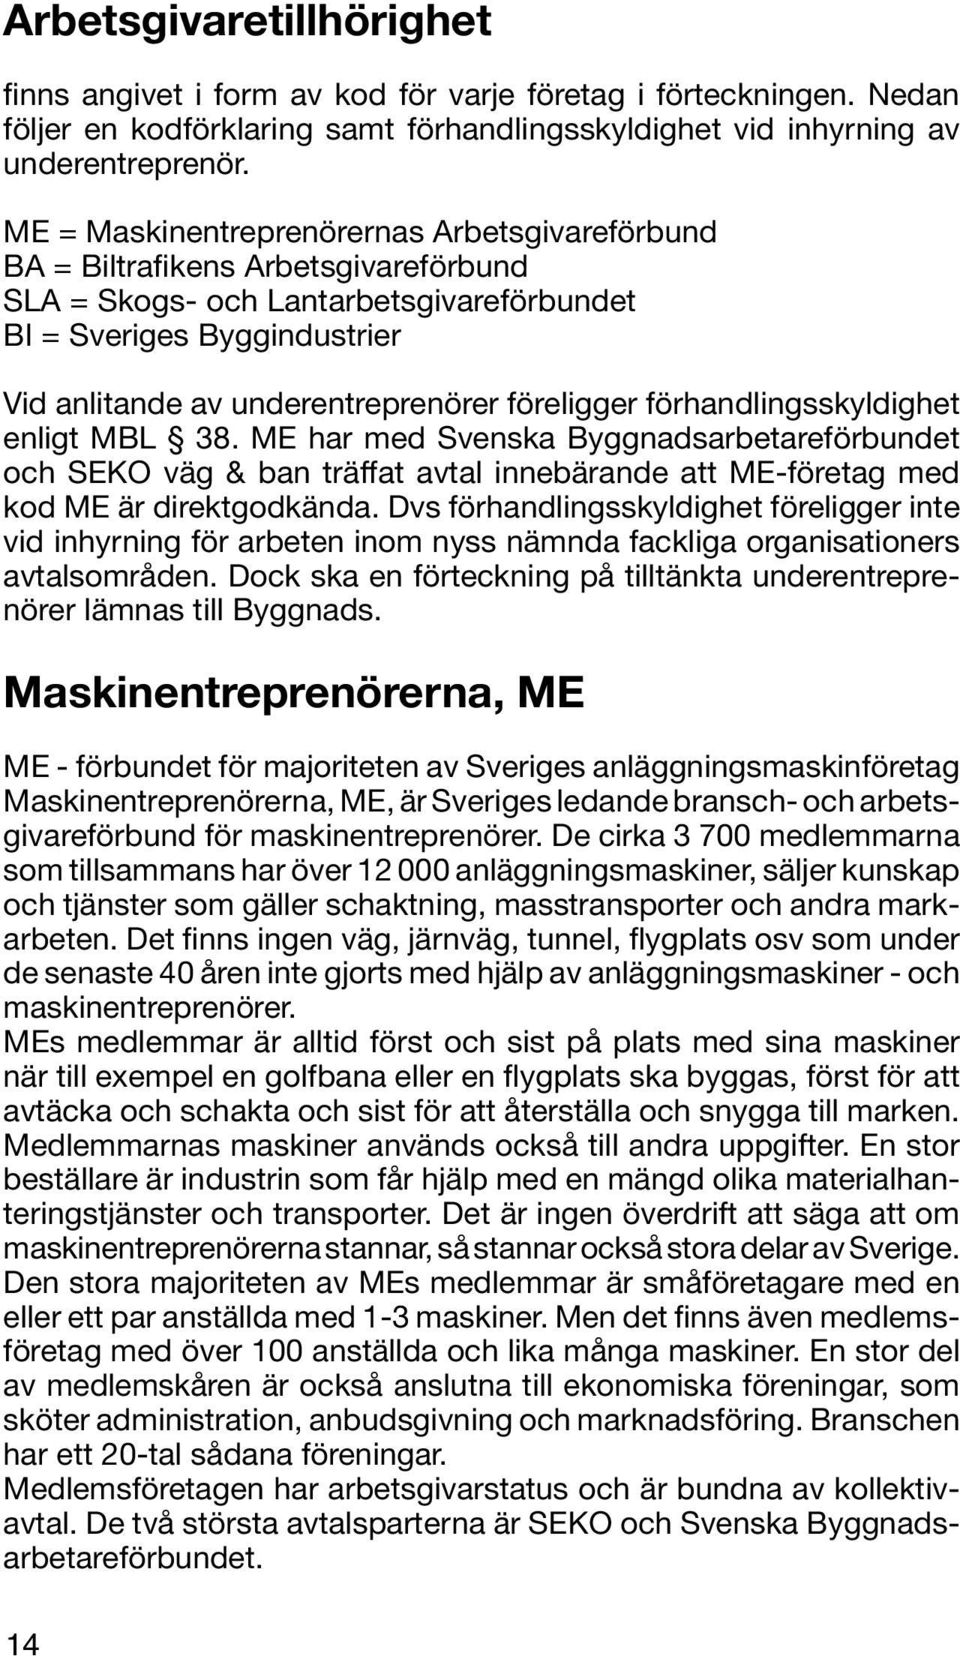 föreligger förhandlingsskyldighet enligt MBL 38. ME har med Svenska Byggnadsarbetareförbundet och SEKO väg & ban träffat avtal innebärande att ME-företag med kod ME är direktgodkända.